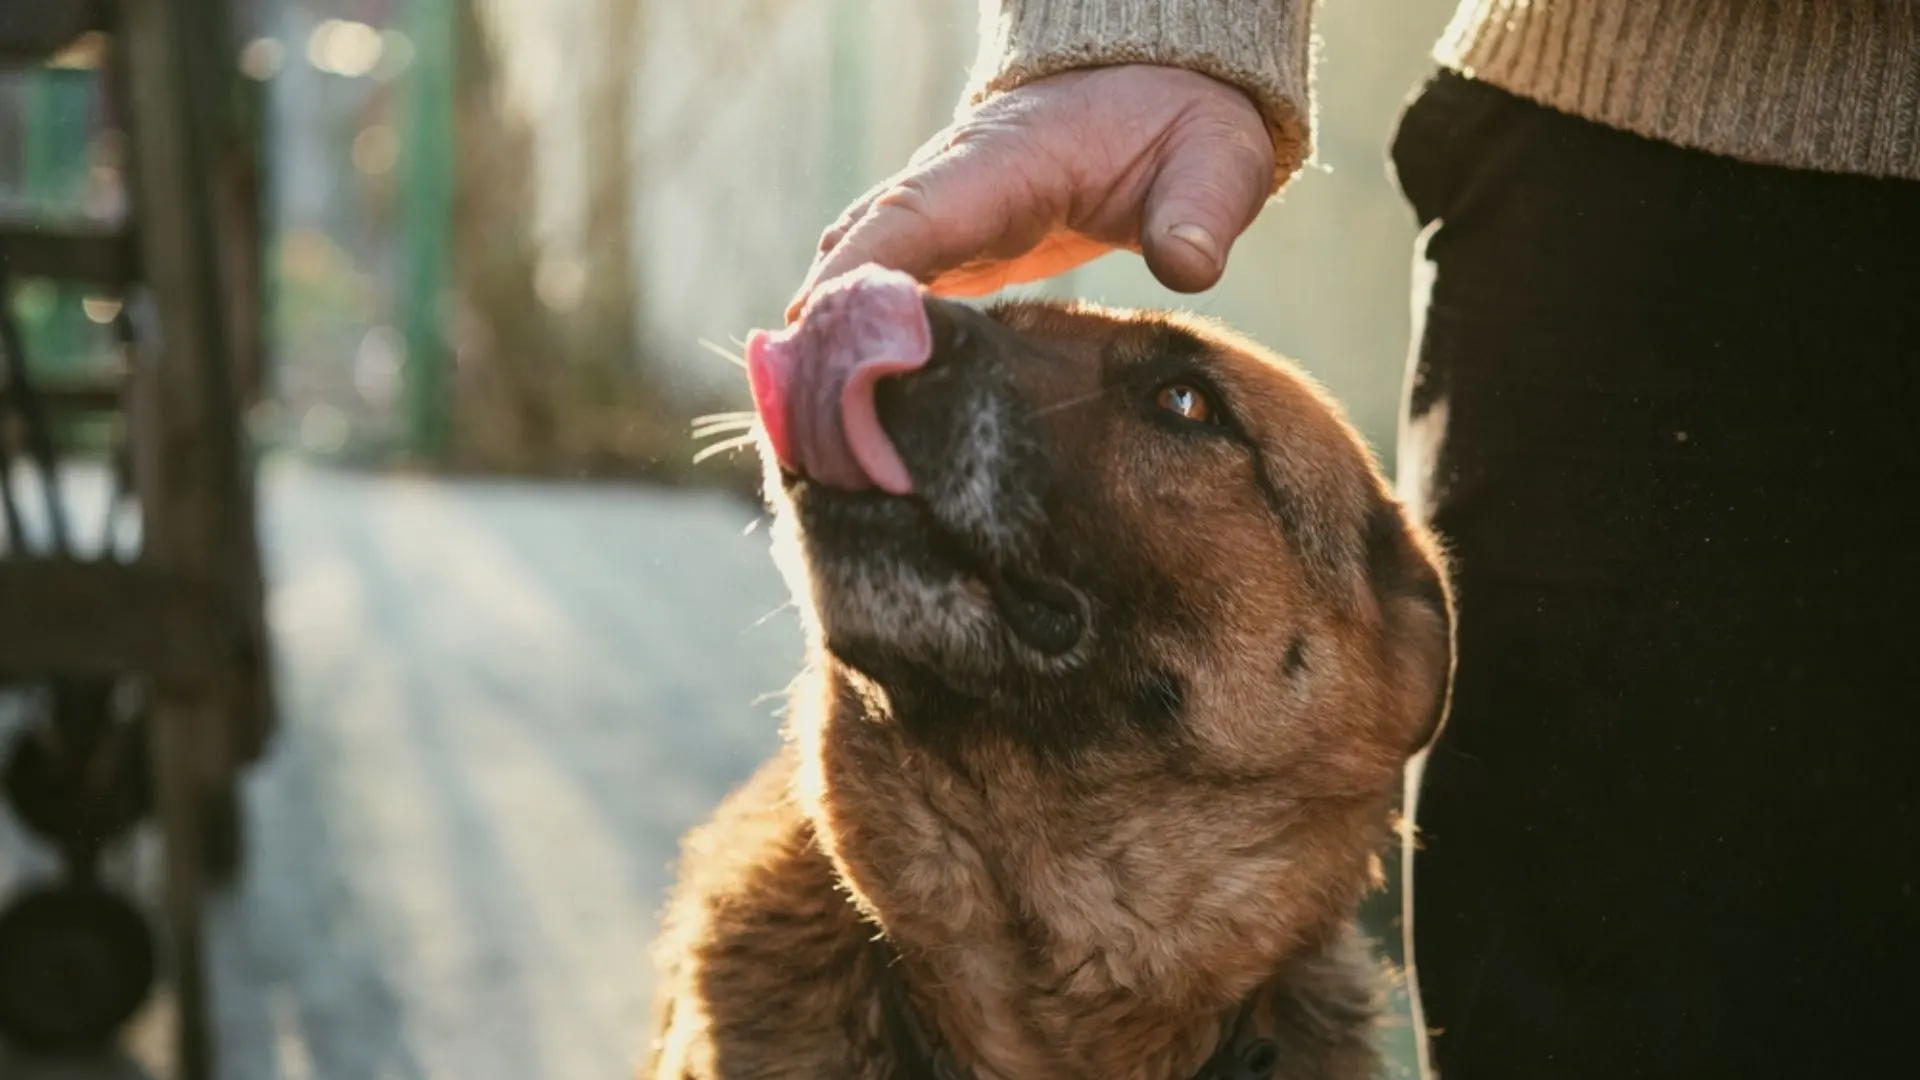 german shepherd lick his owner's hand